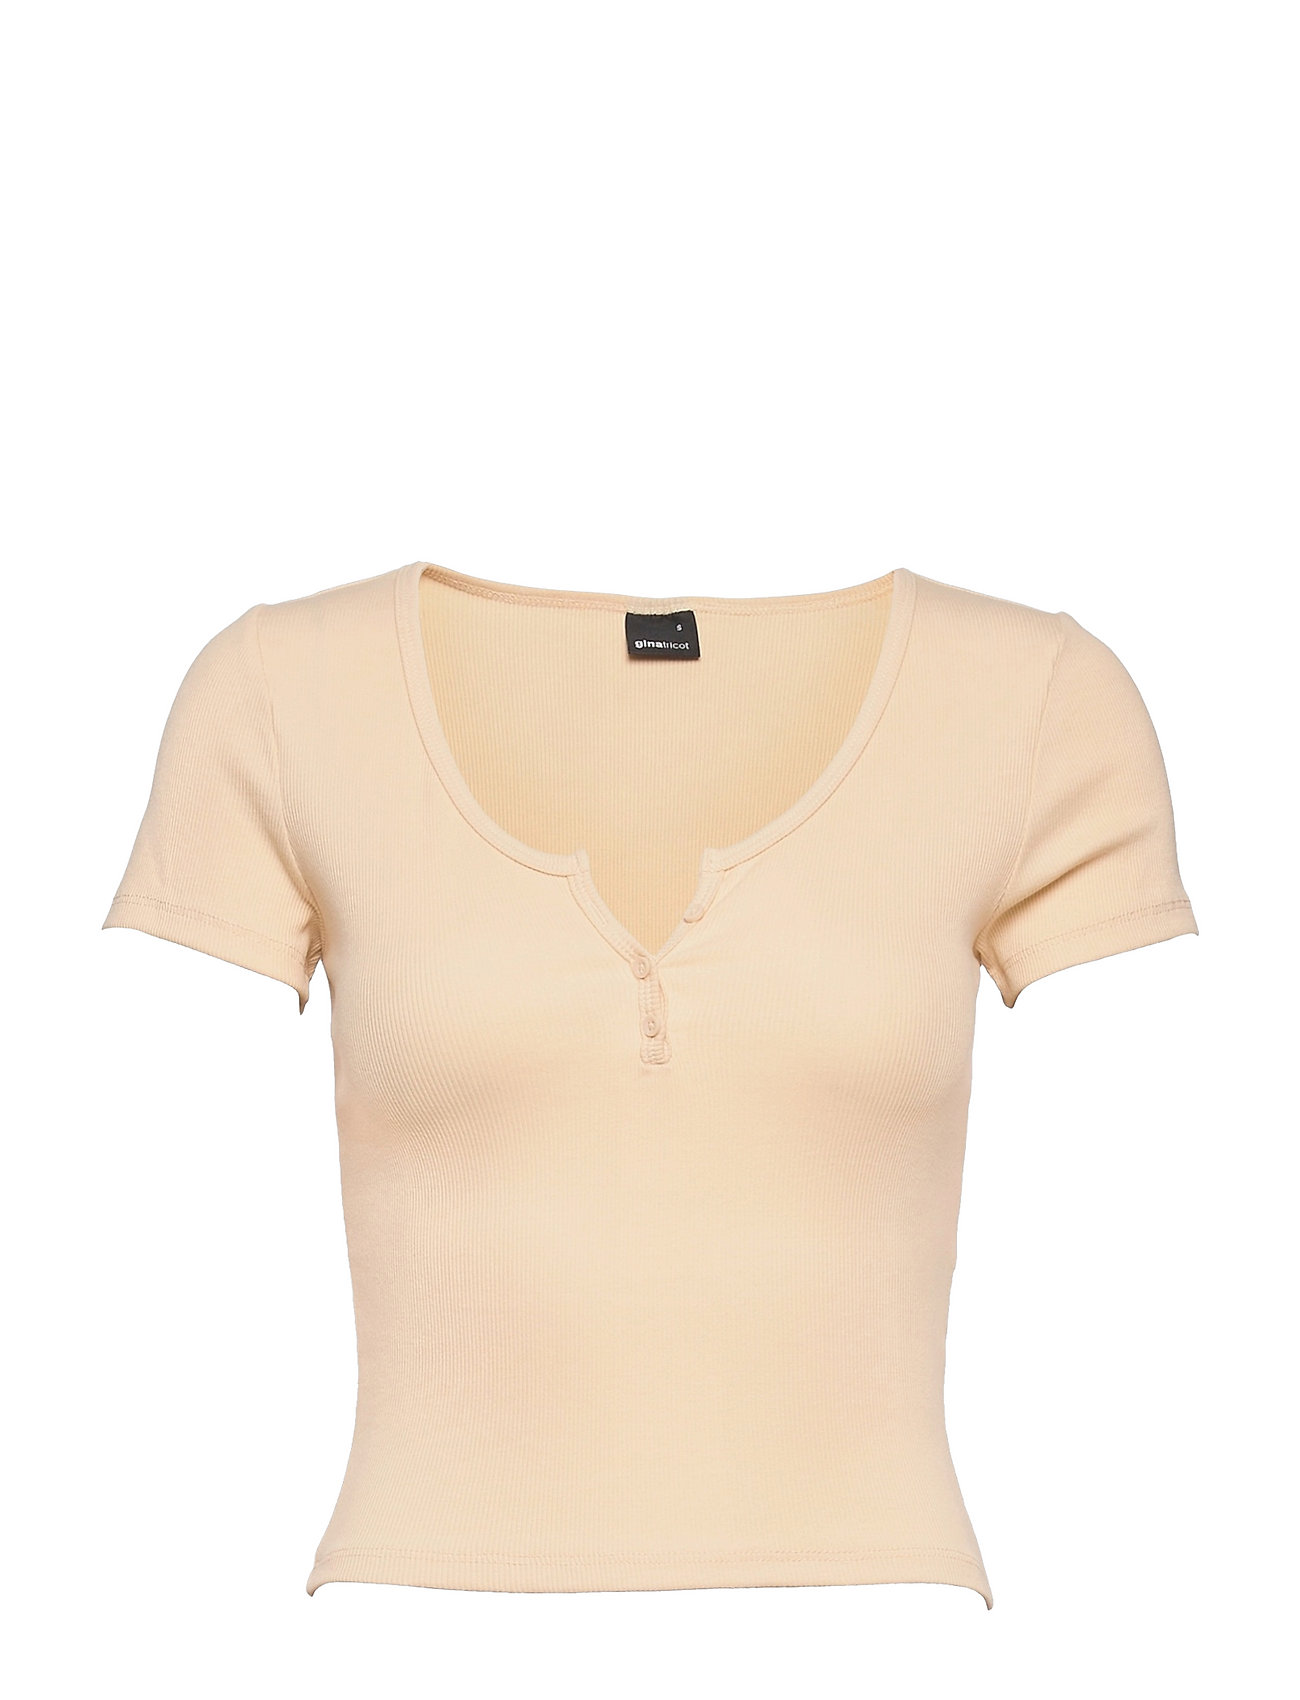 Mimmi Top T-shirts & Tops Short-sleeved Kermanvärinen Gina Tricot